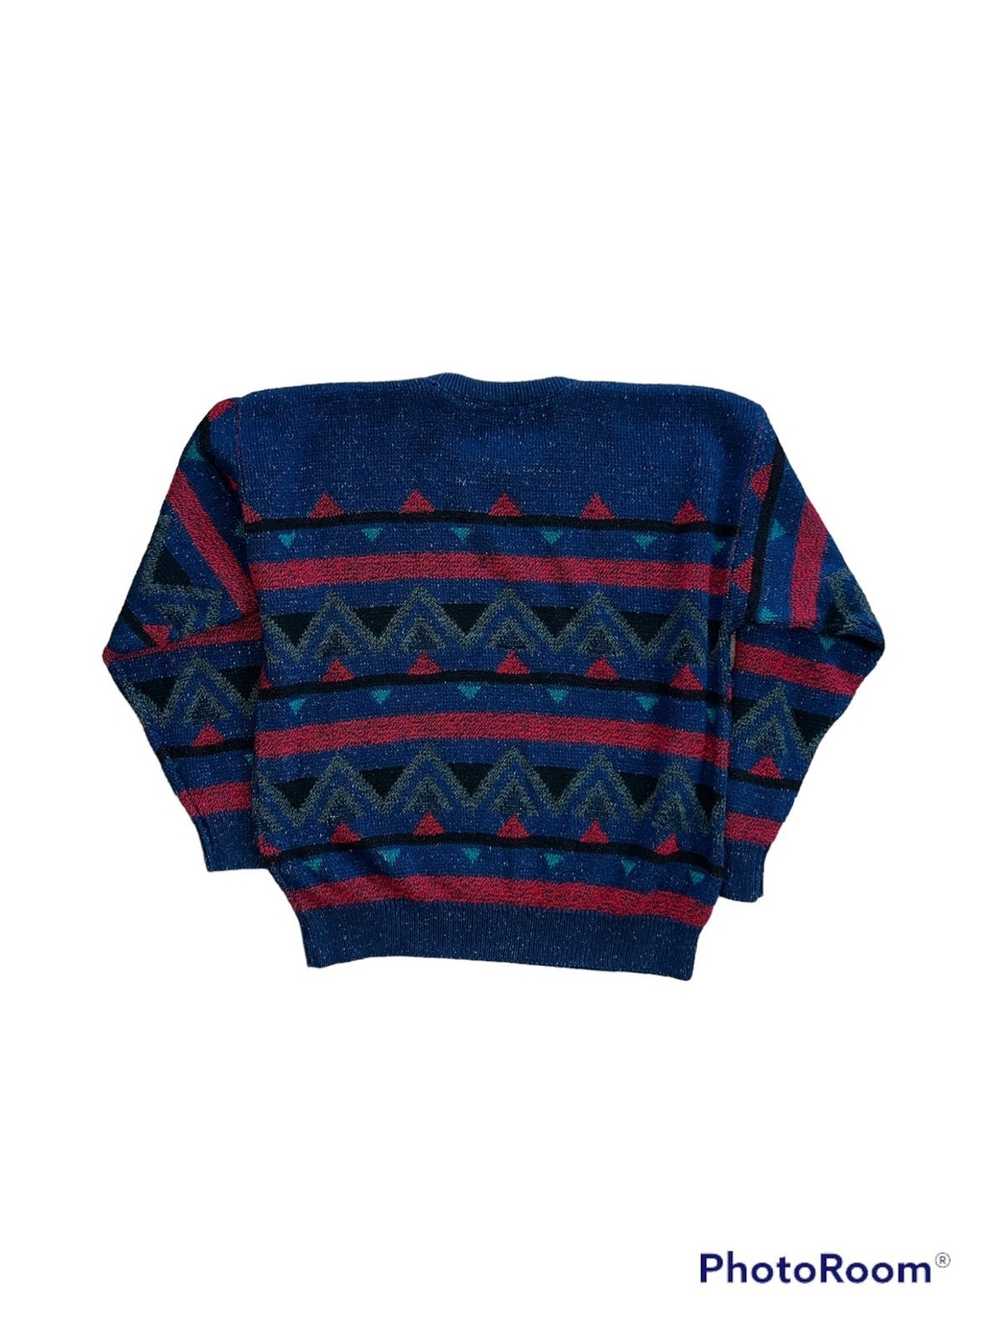 Jantzen × Vintage Vintage Jantzen Sweater - image 3